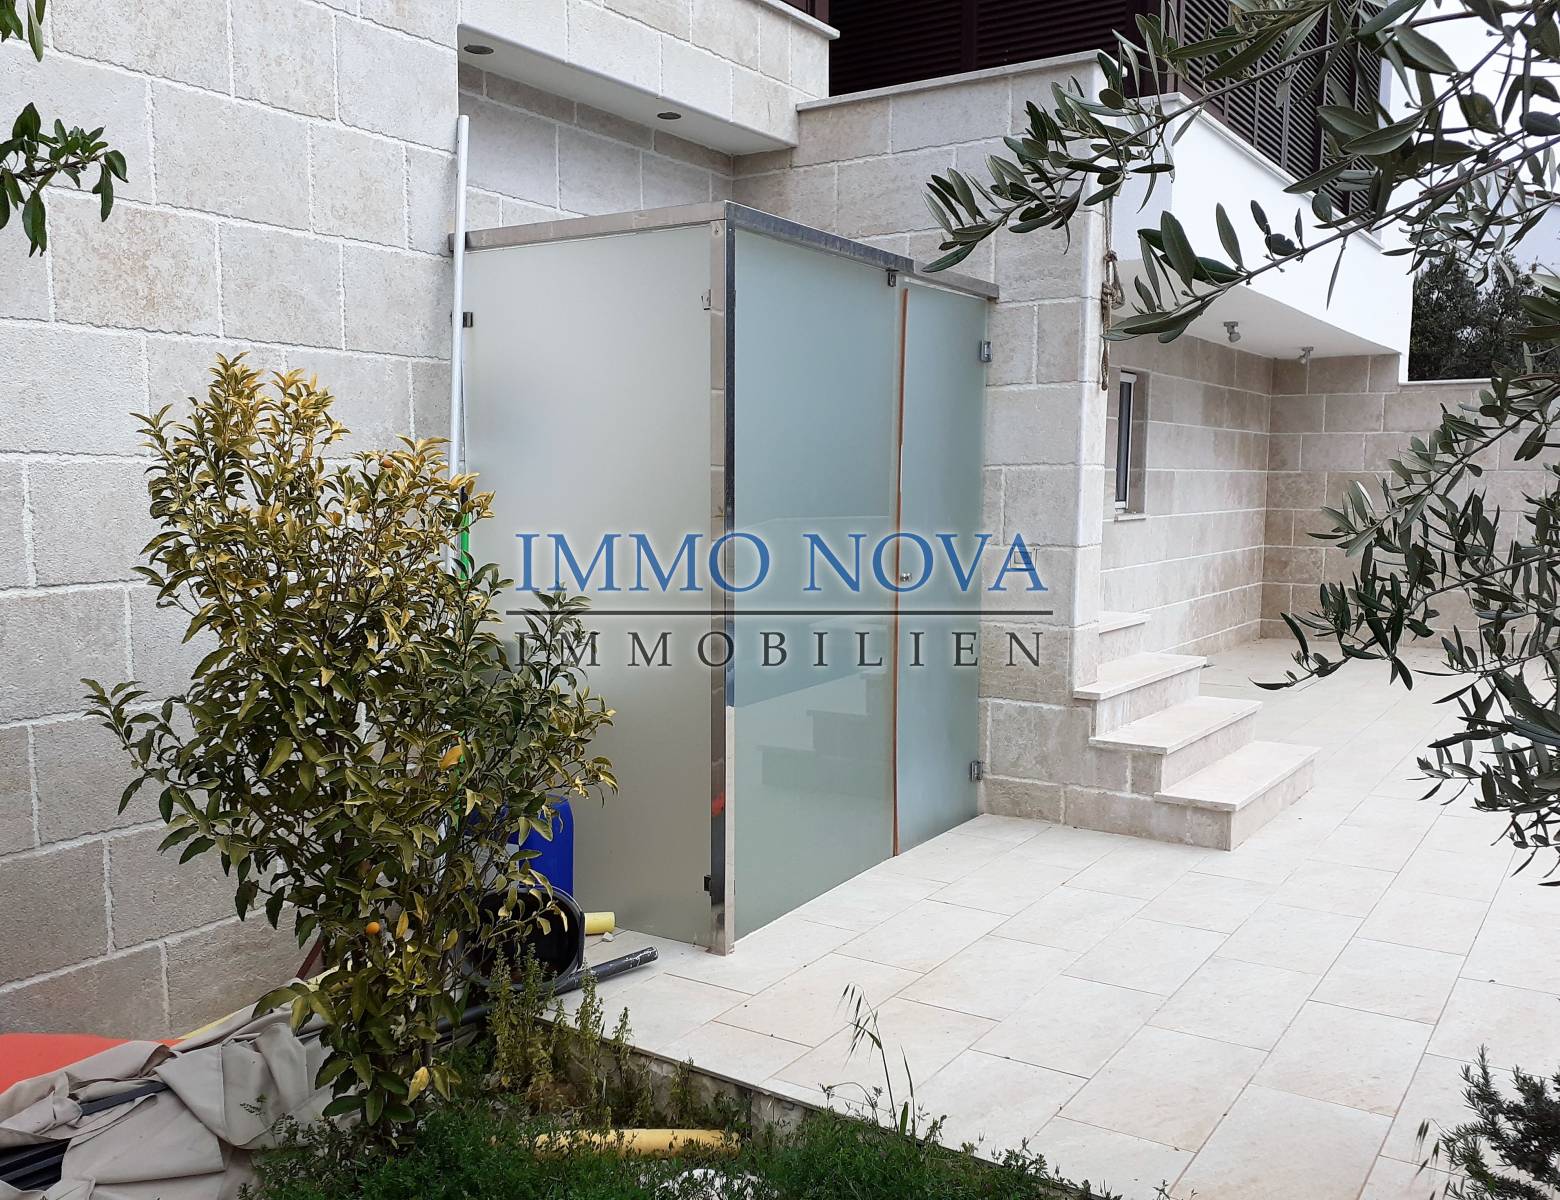 Exklusiver Verkauf der Agentur Immonova,1. Reihe zum Meer, Haus mit Swimmbad, zu verkaufen